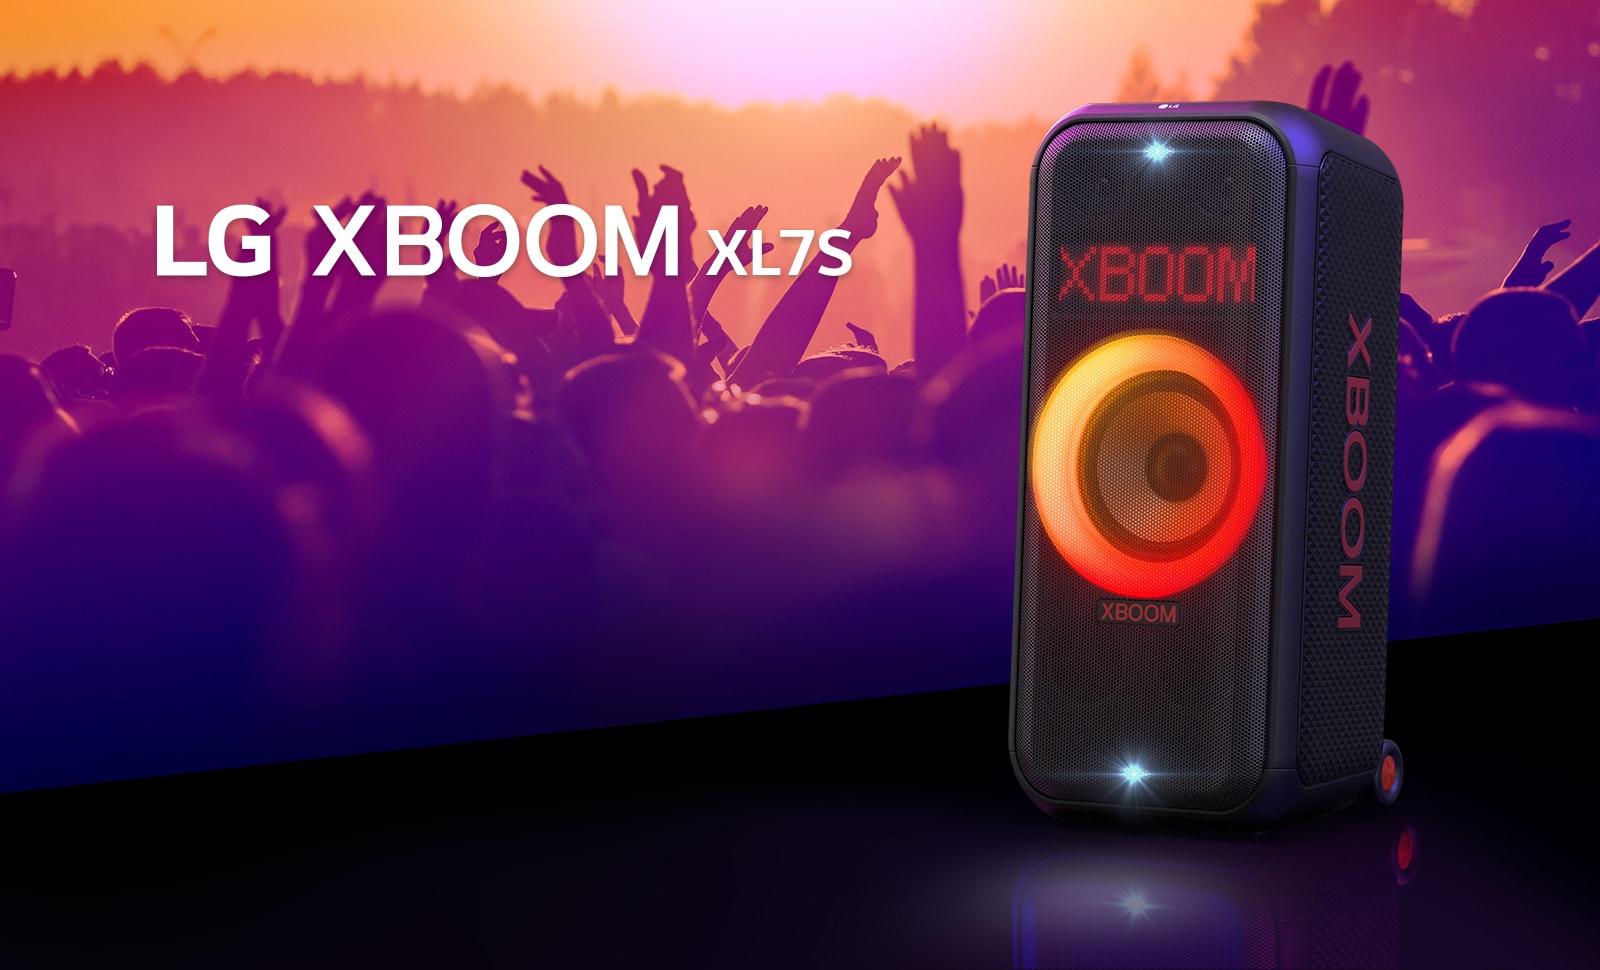 Głośnik LG XBOOM XL7S jest ustawiony na scenie z włączonym oświetleniem przechodzącym od czerwonego do pomarańczowego. Za sceną, ludzie cieszą się muzyką.